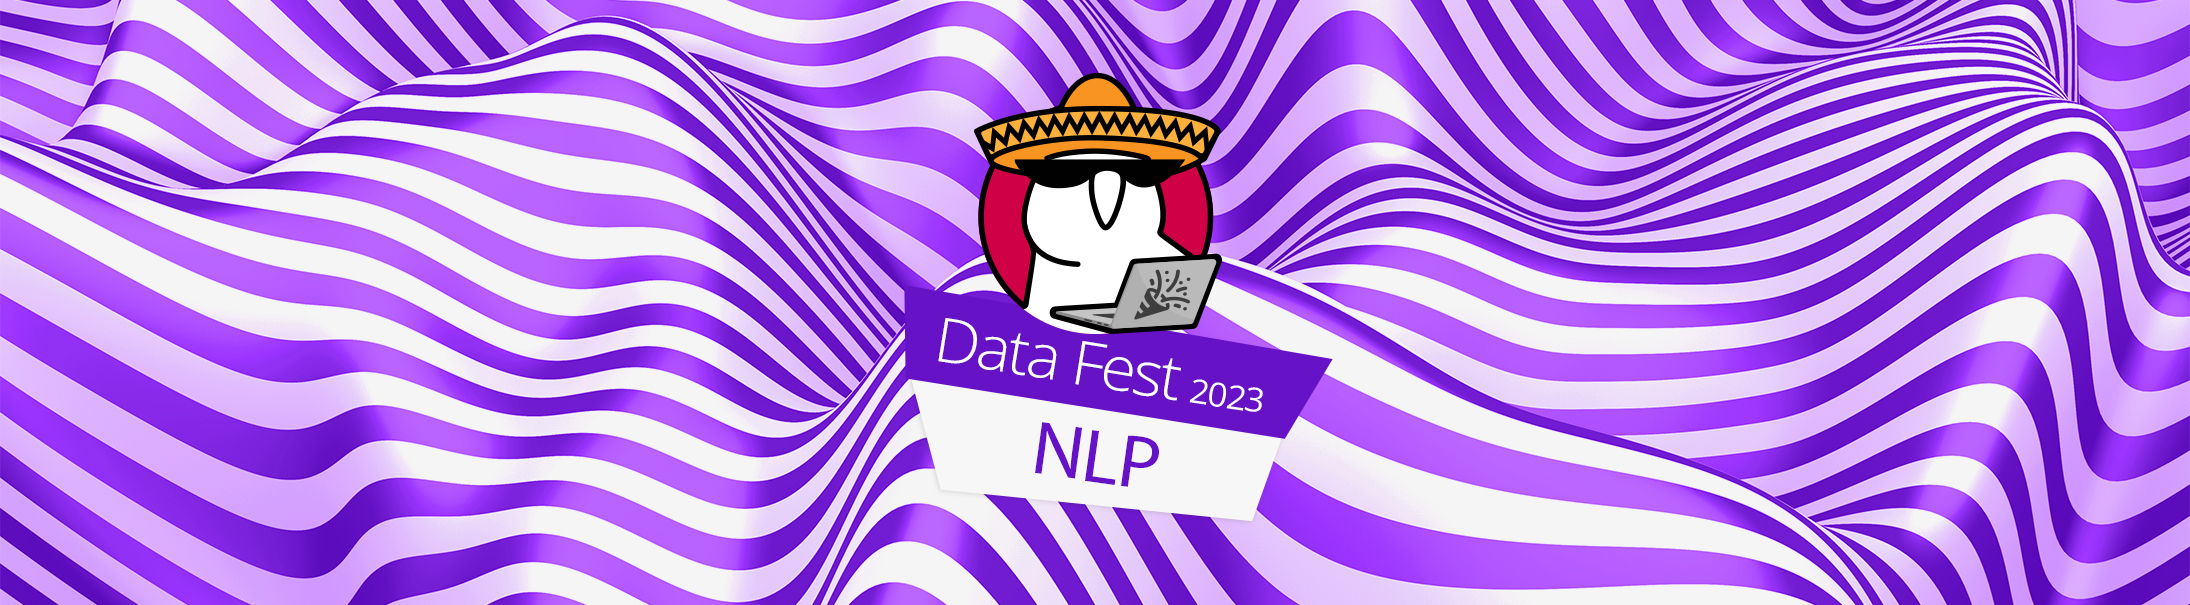 NLP (Data Fest 2023)